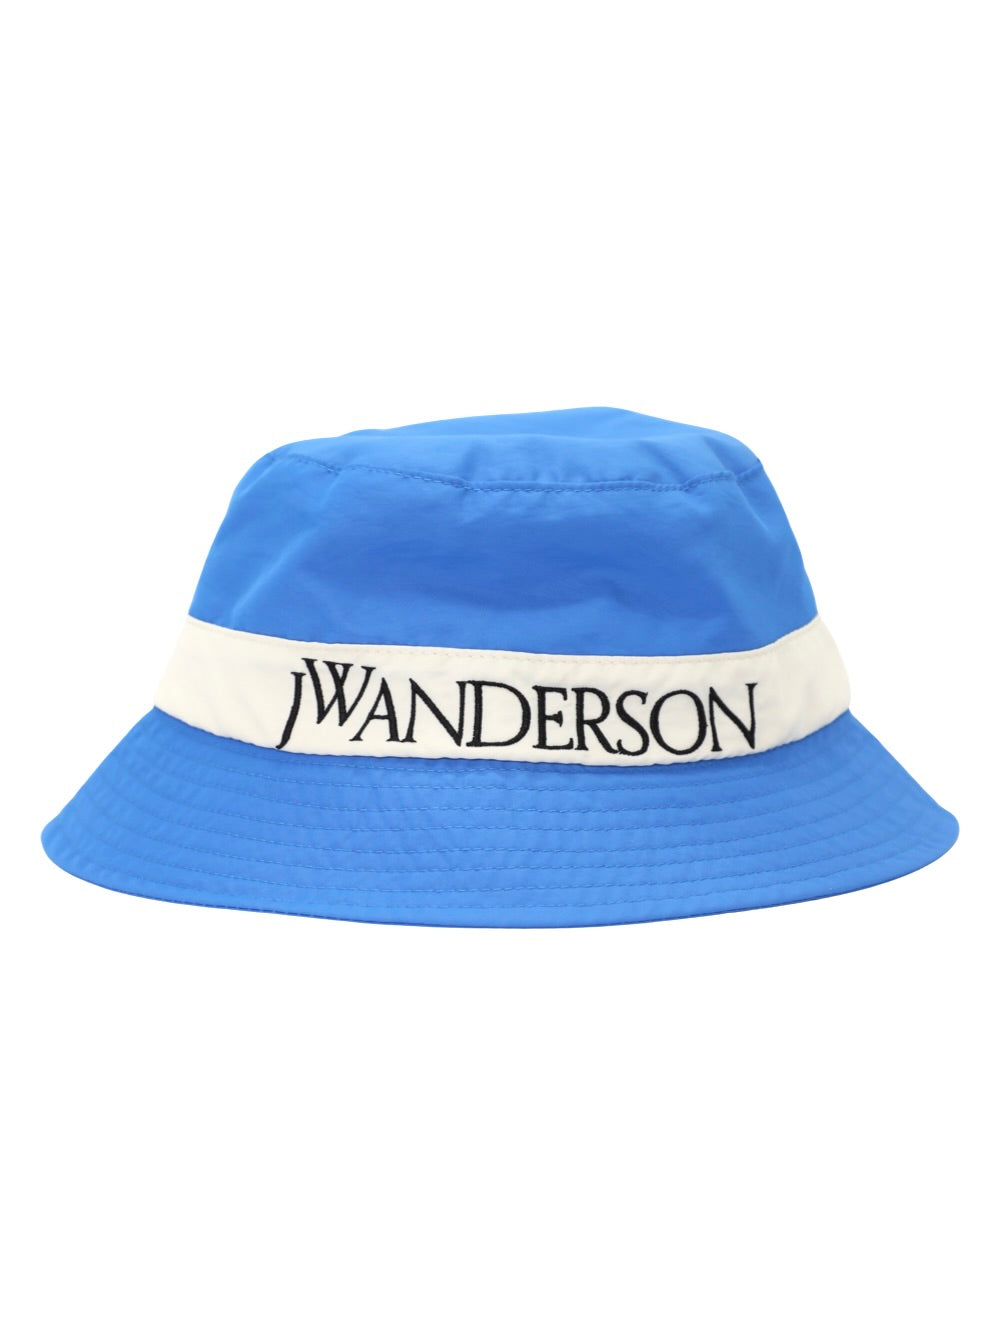 JW Anderson Logo Bucket Hat in Blue/White